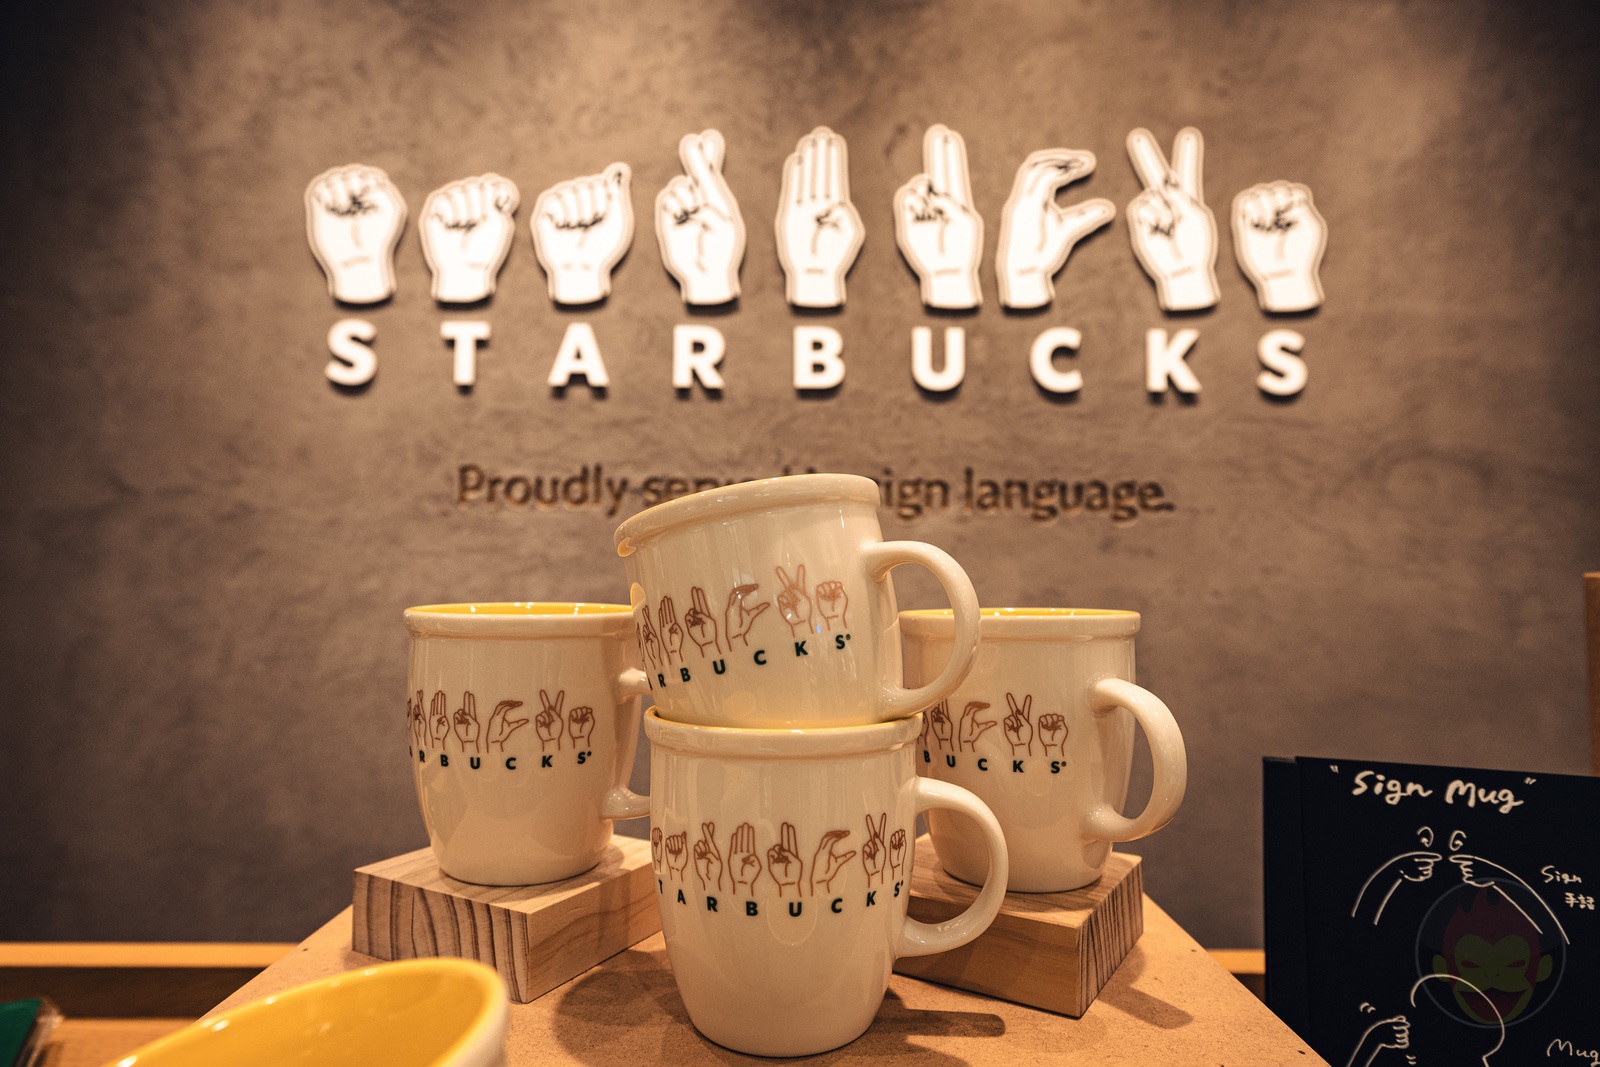 Sign-Language-Starbucks-in-japan-04.jpg